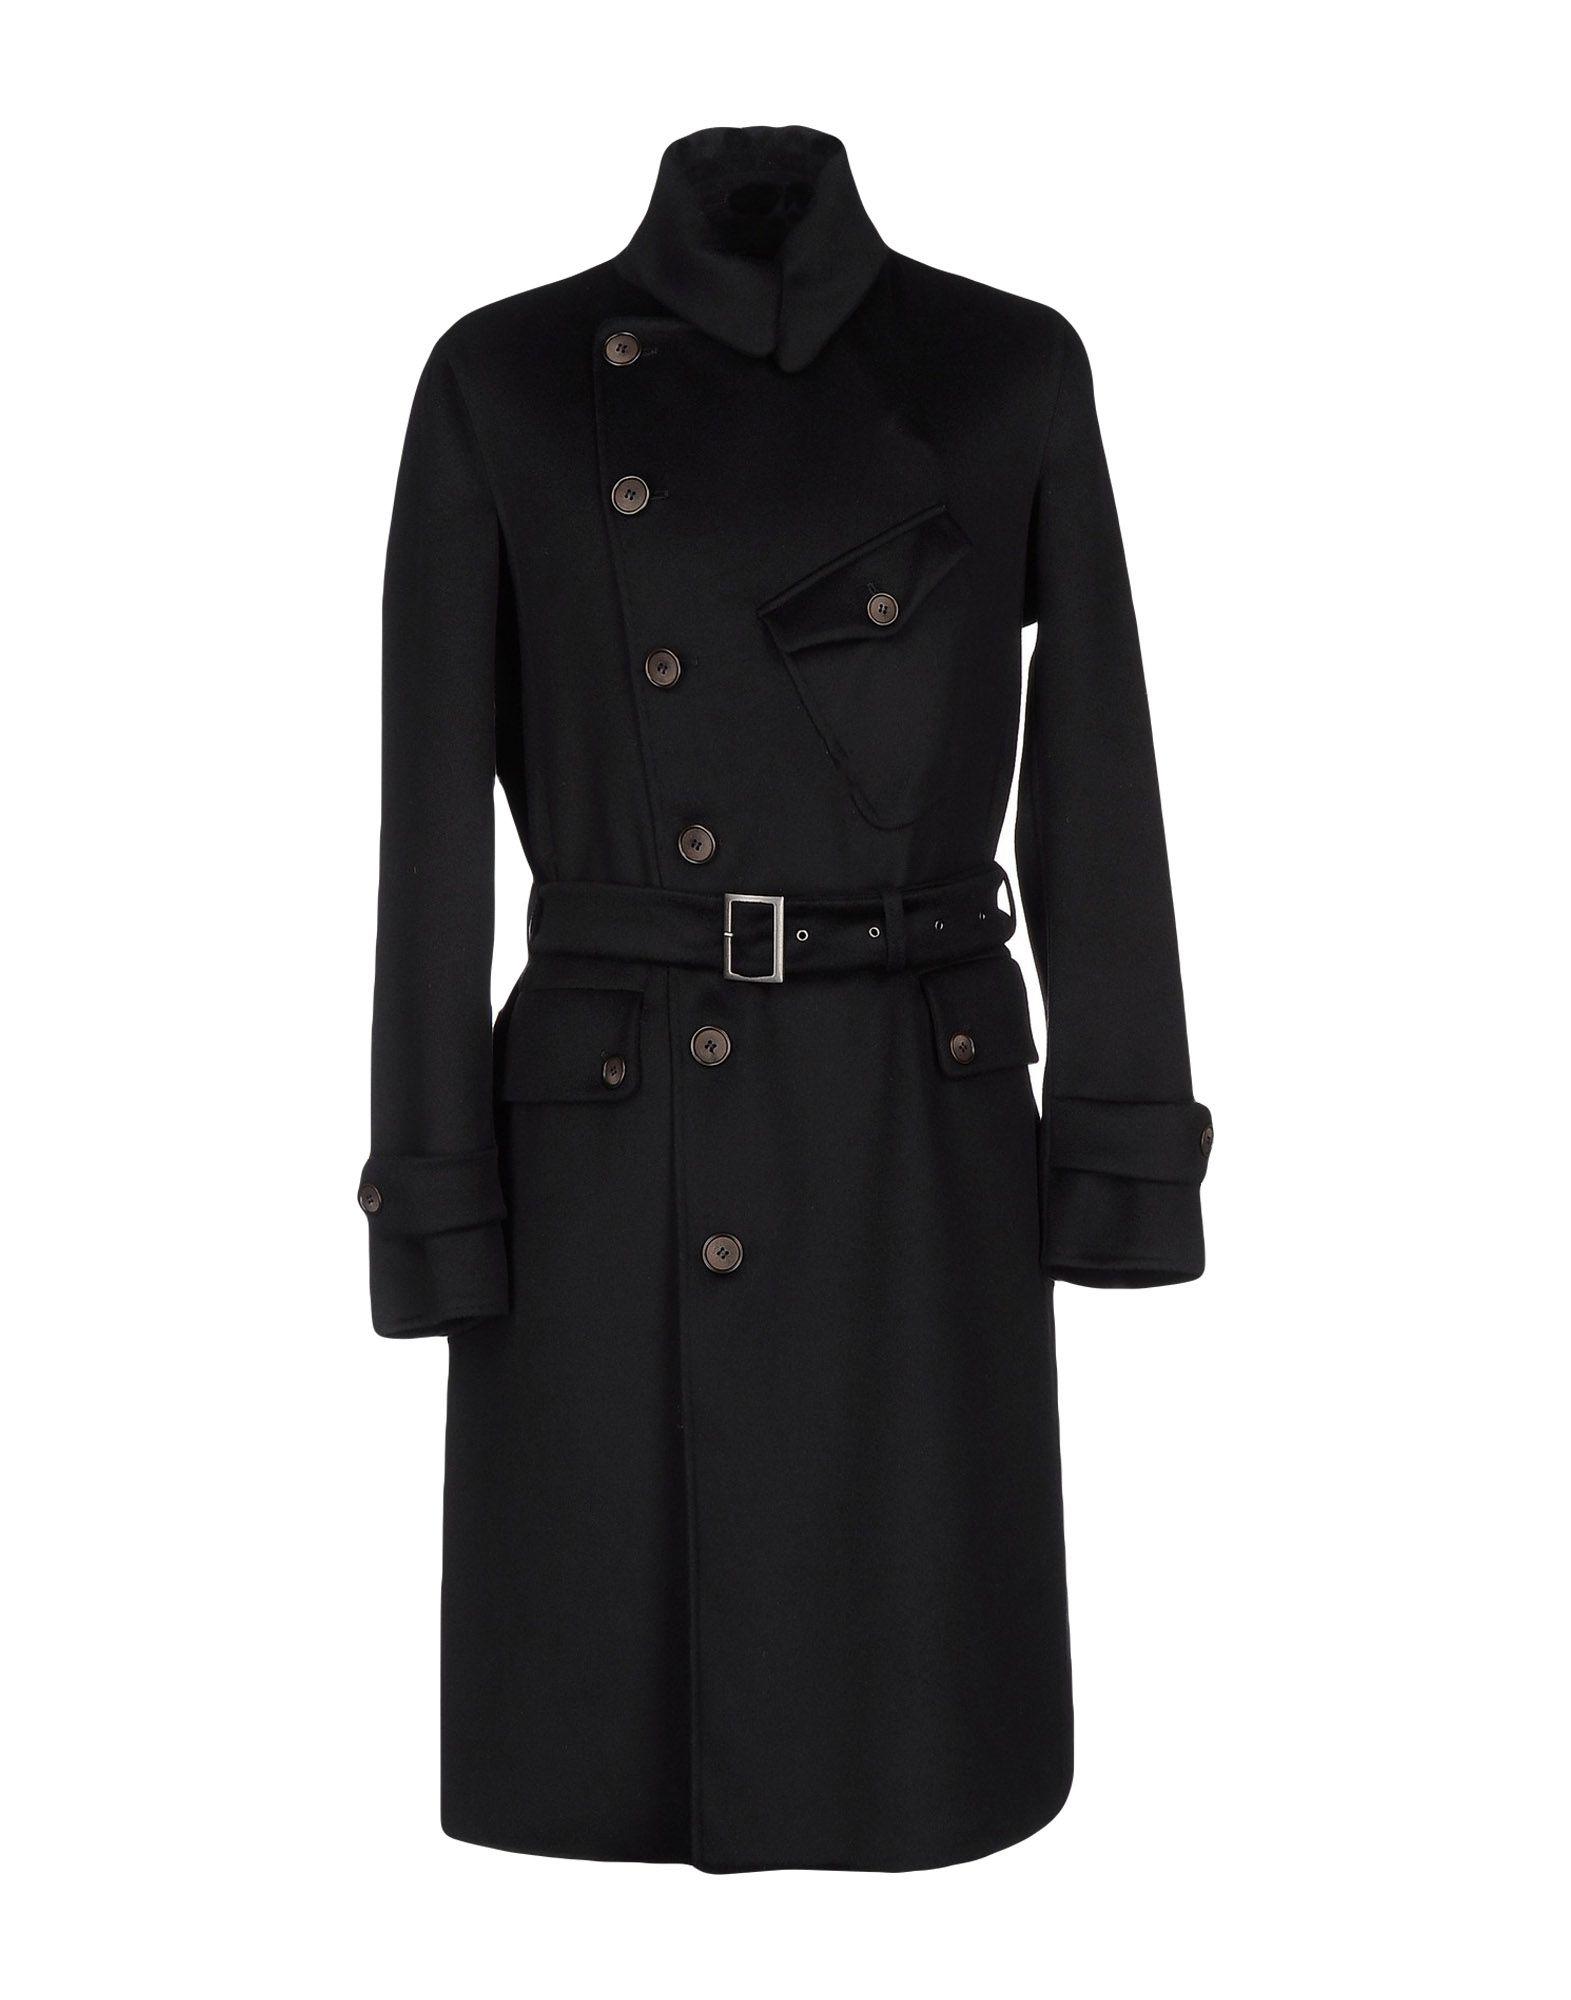 Giorgio Armani Flannel Overcoat in Black for Men - Lyst